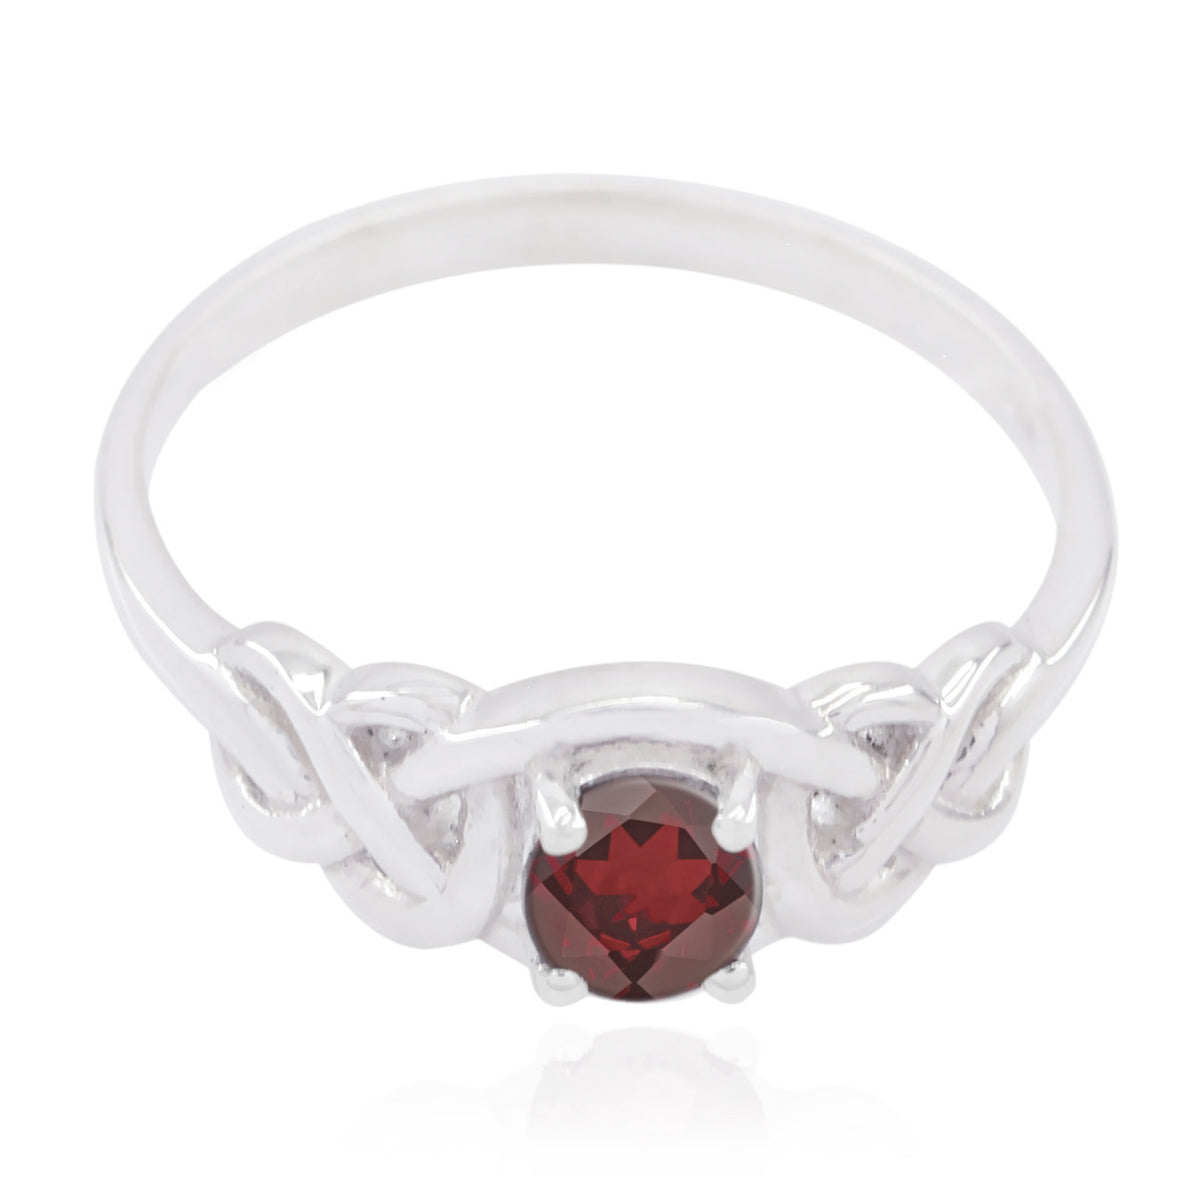 Teasing Gemstones Garnet 925 Silver Rings Bridesmaids Jewelry Sets